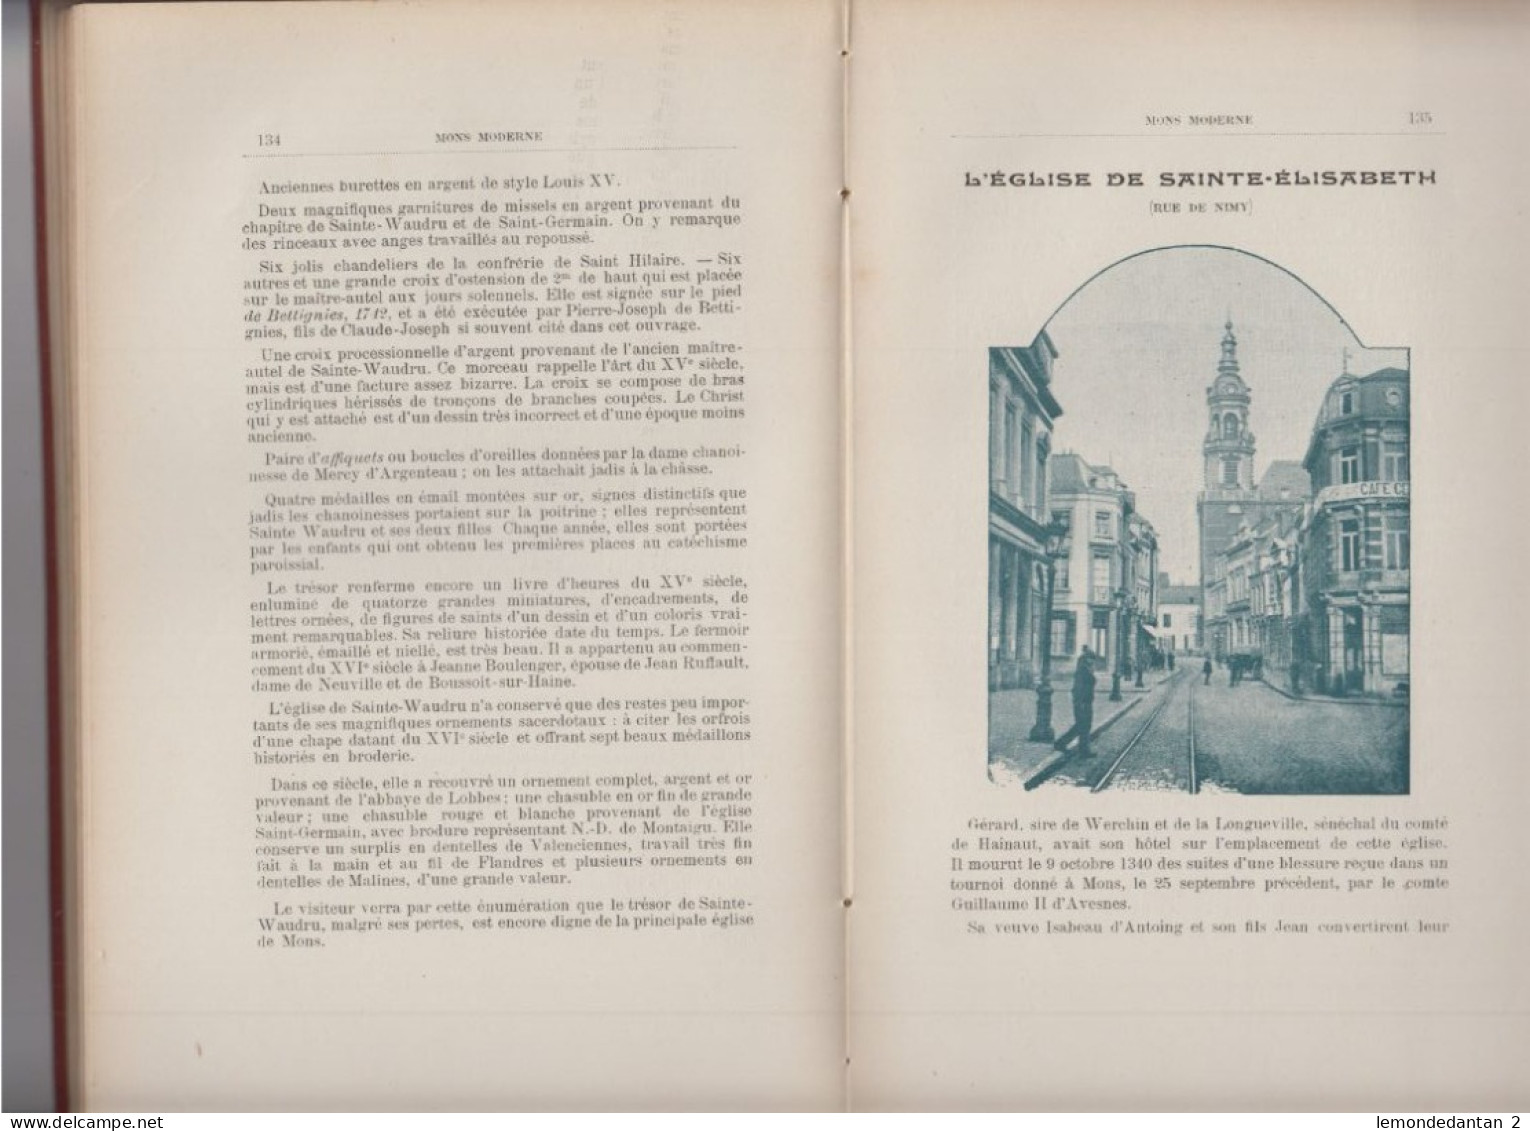 MONS 1894 - Guide Du Touriste - G. Decamps (Janssens Editeur) - Hyon, Havré, Ciply, Mesvin, Boussu, Jemappes, Ghlin - België